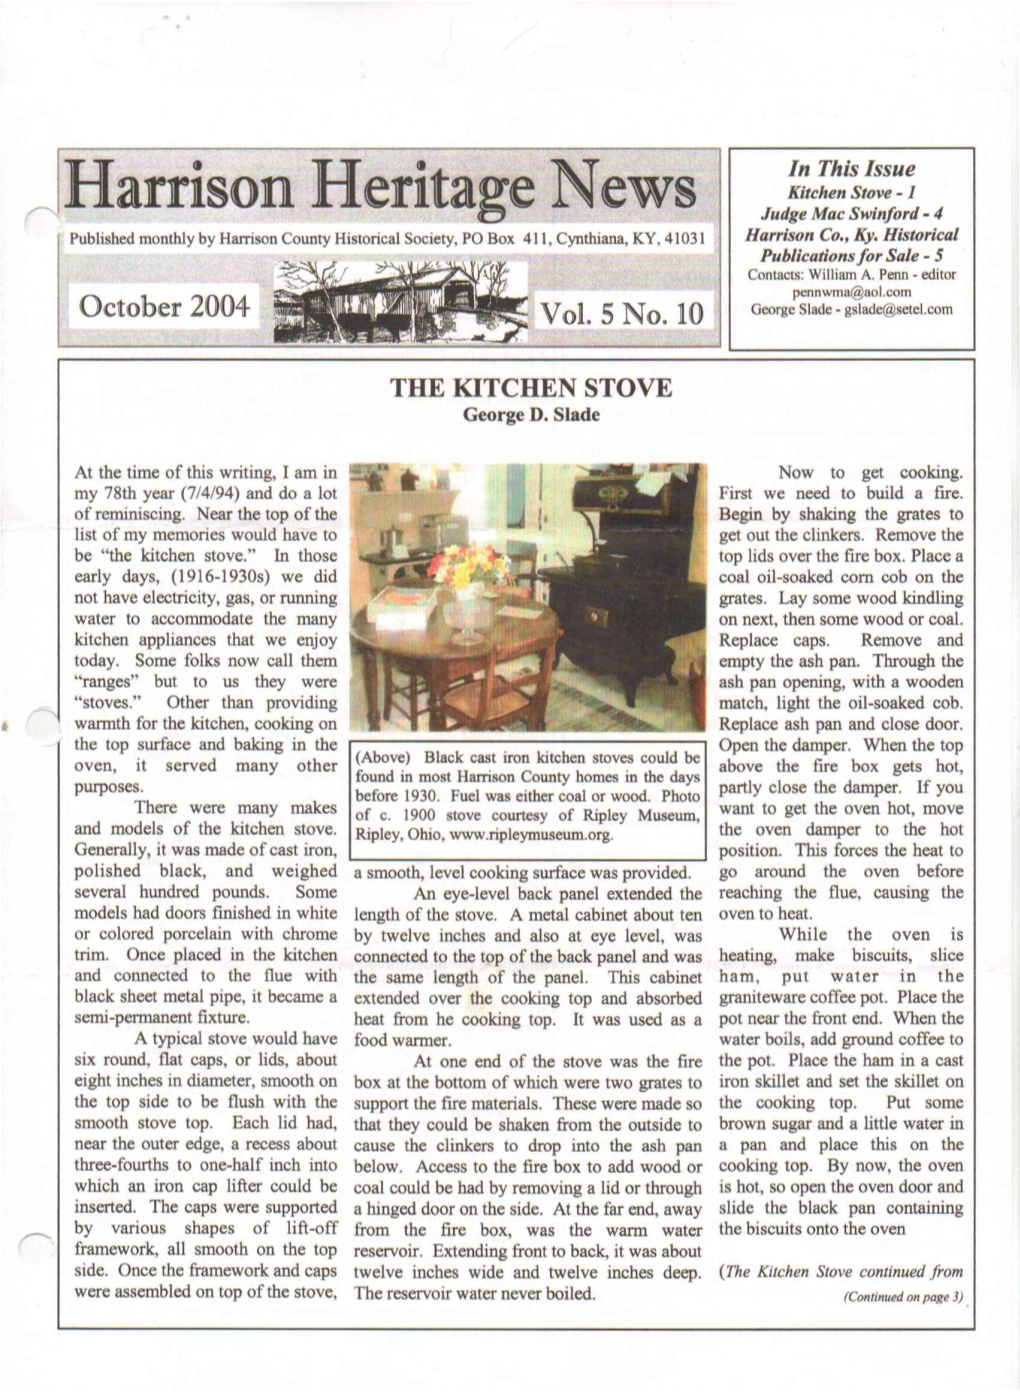 Harrison Heritage News